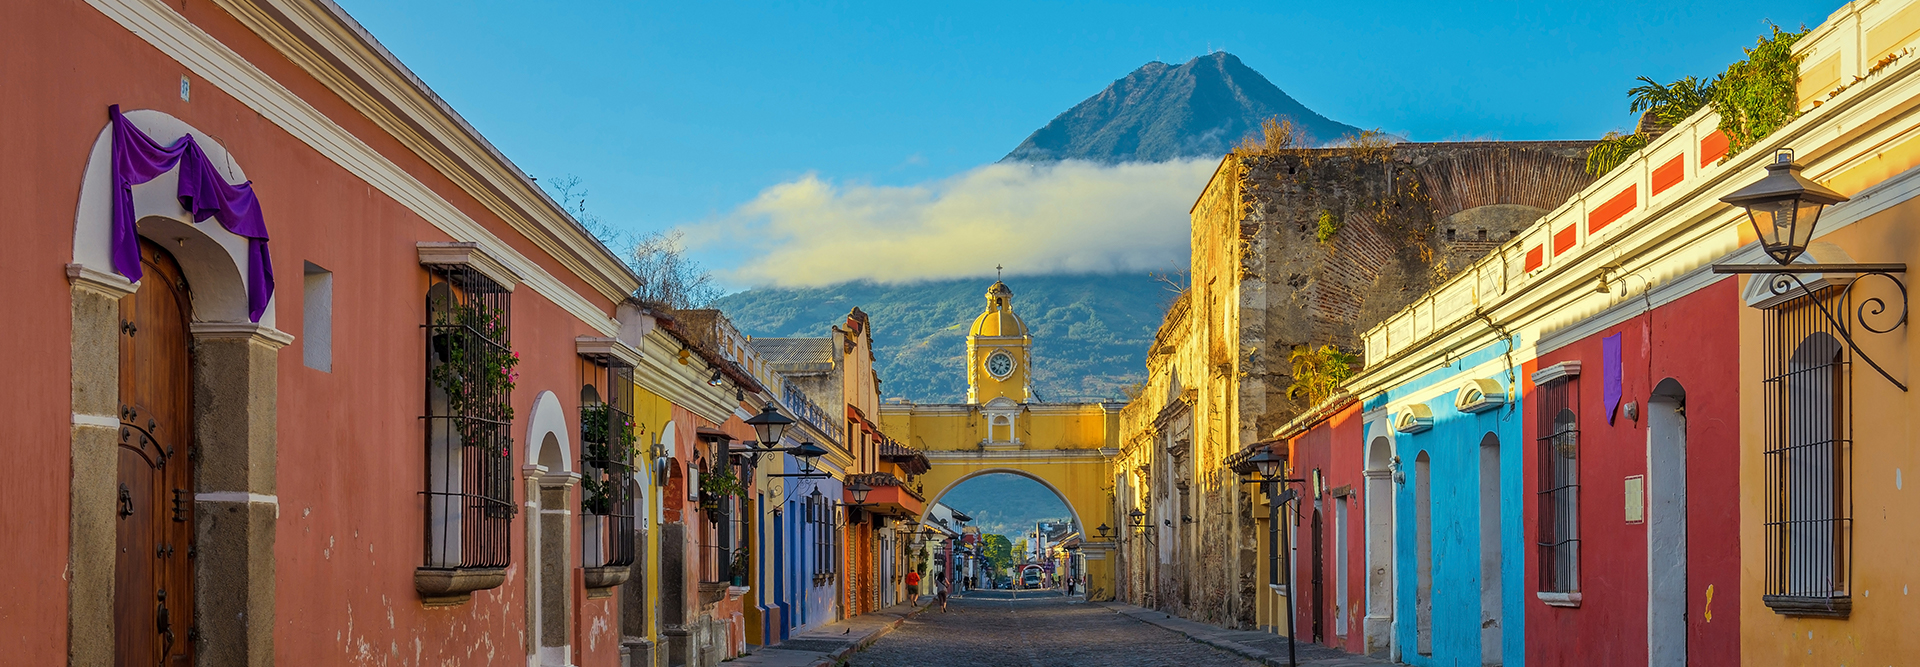 Antigua City, Guatemala, Central America